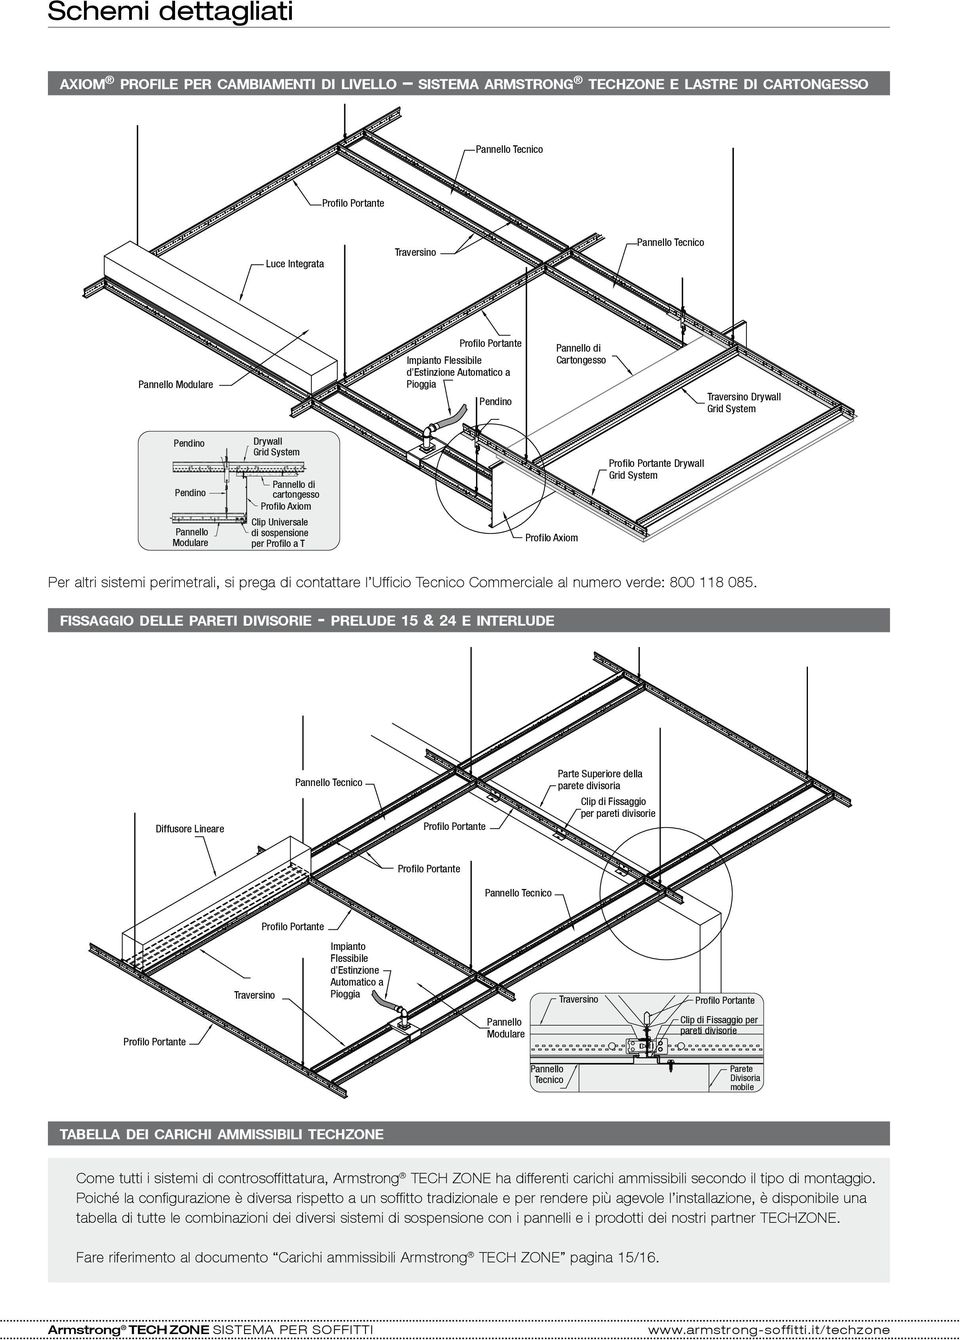 Drywall Grid System Pannello di cartongesso Profilo Axiom Clip Universale di sospensione per Profilo a T Profilo Axiom Profilo Portante Drywall Grid System Per altri sistemi perimetrali, si prega di